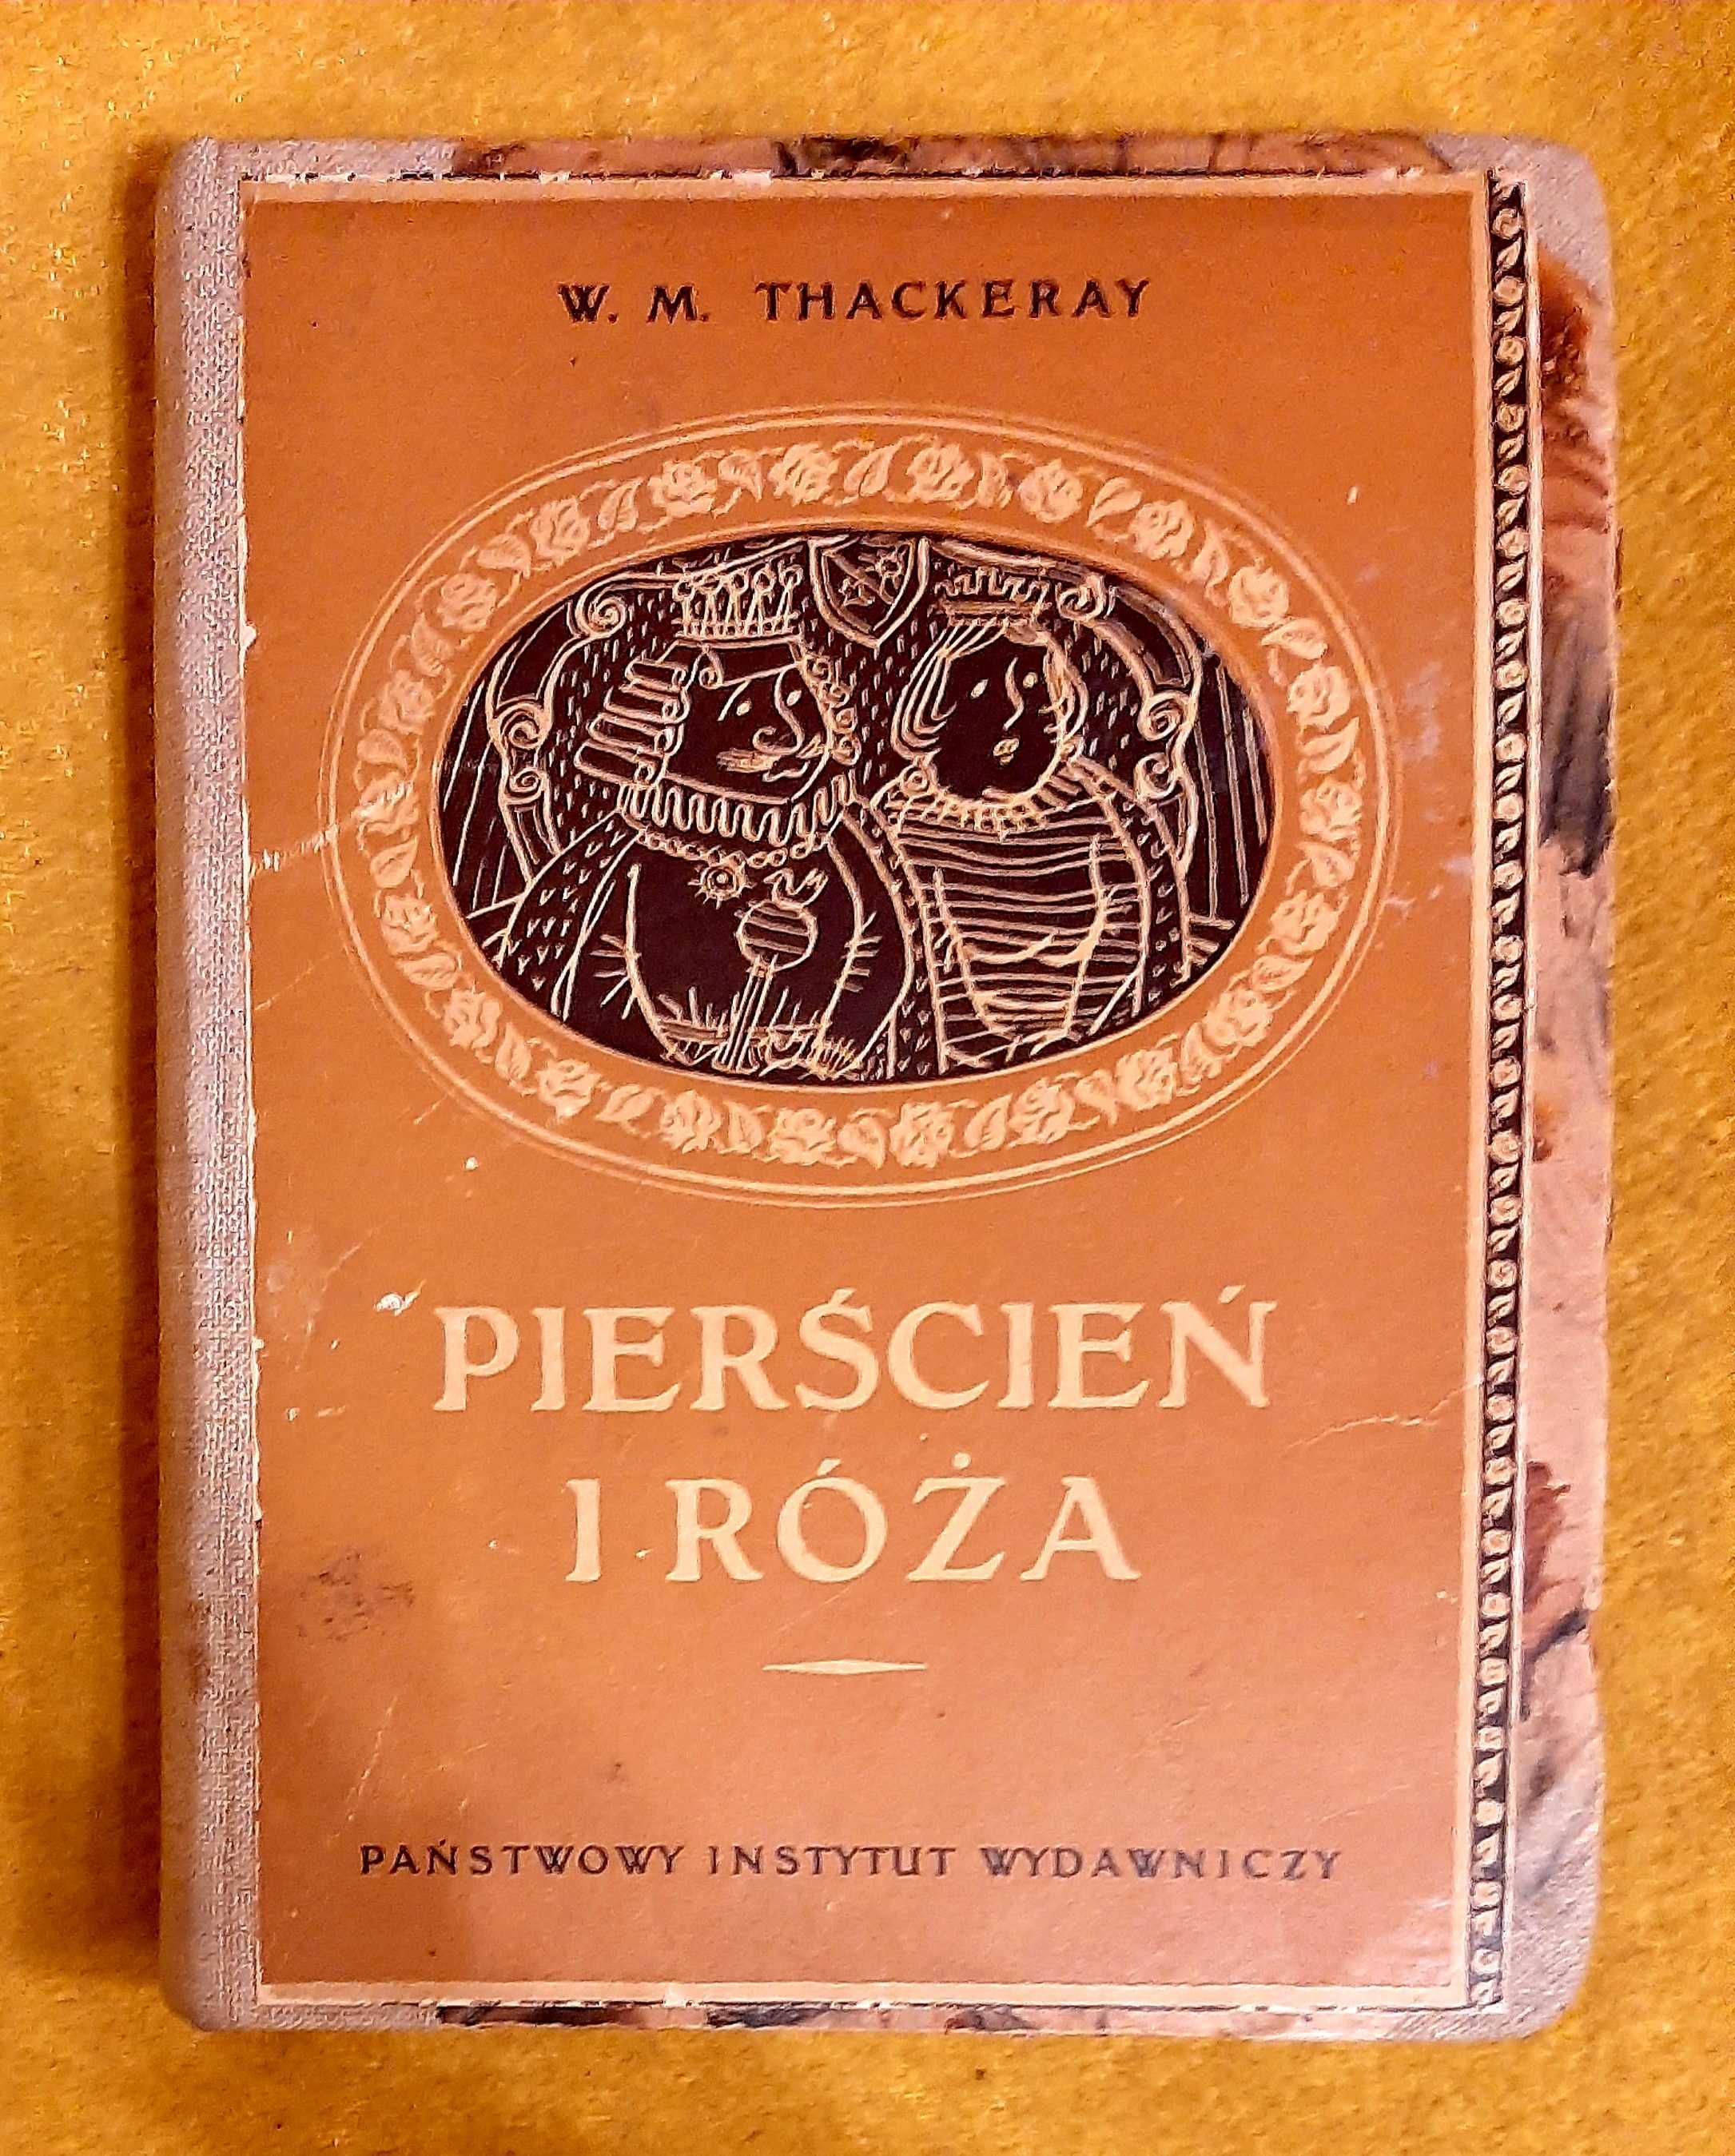 W. M. Thackeray, Pierścień i róża